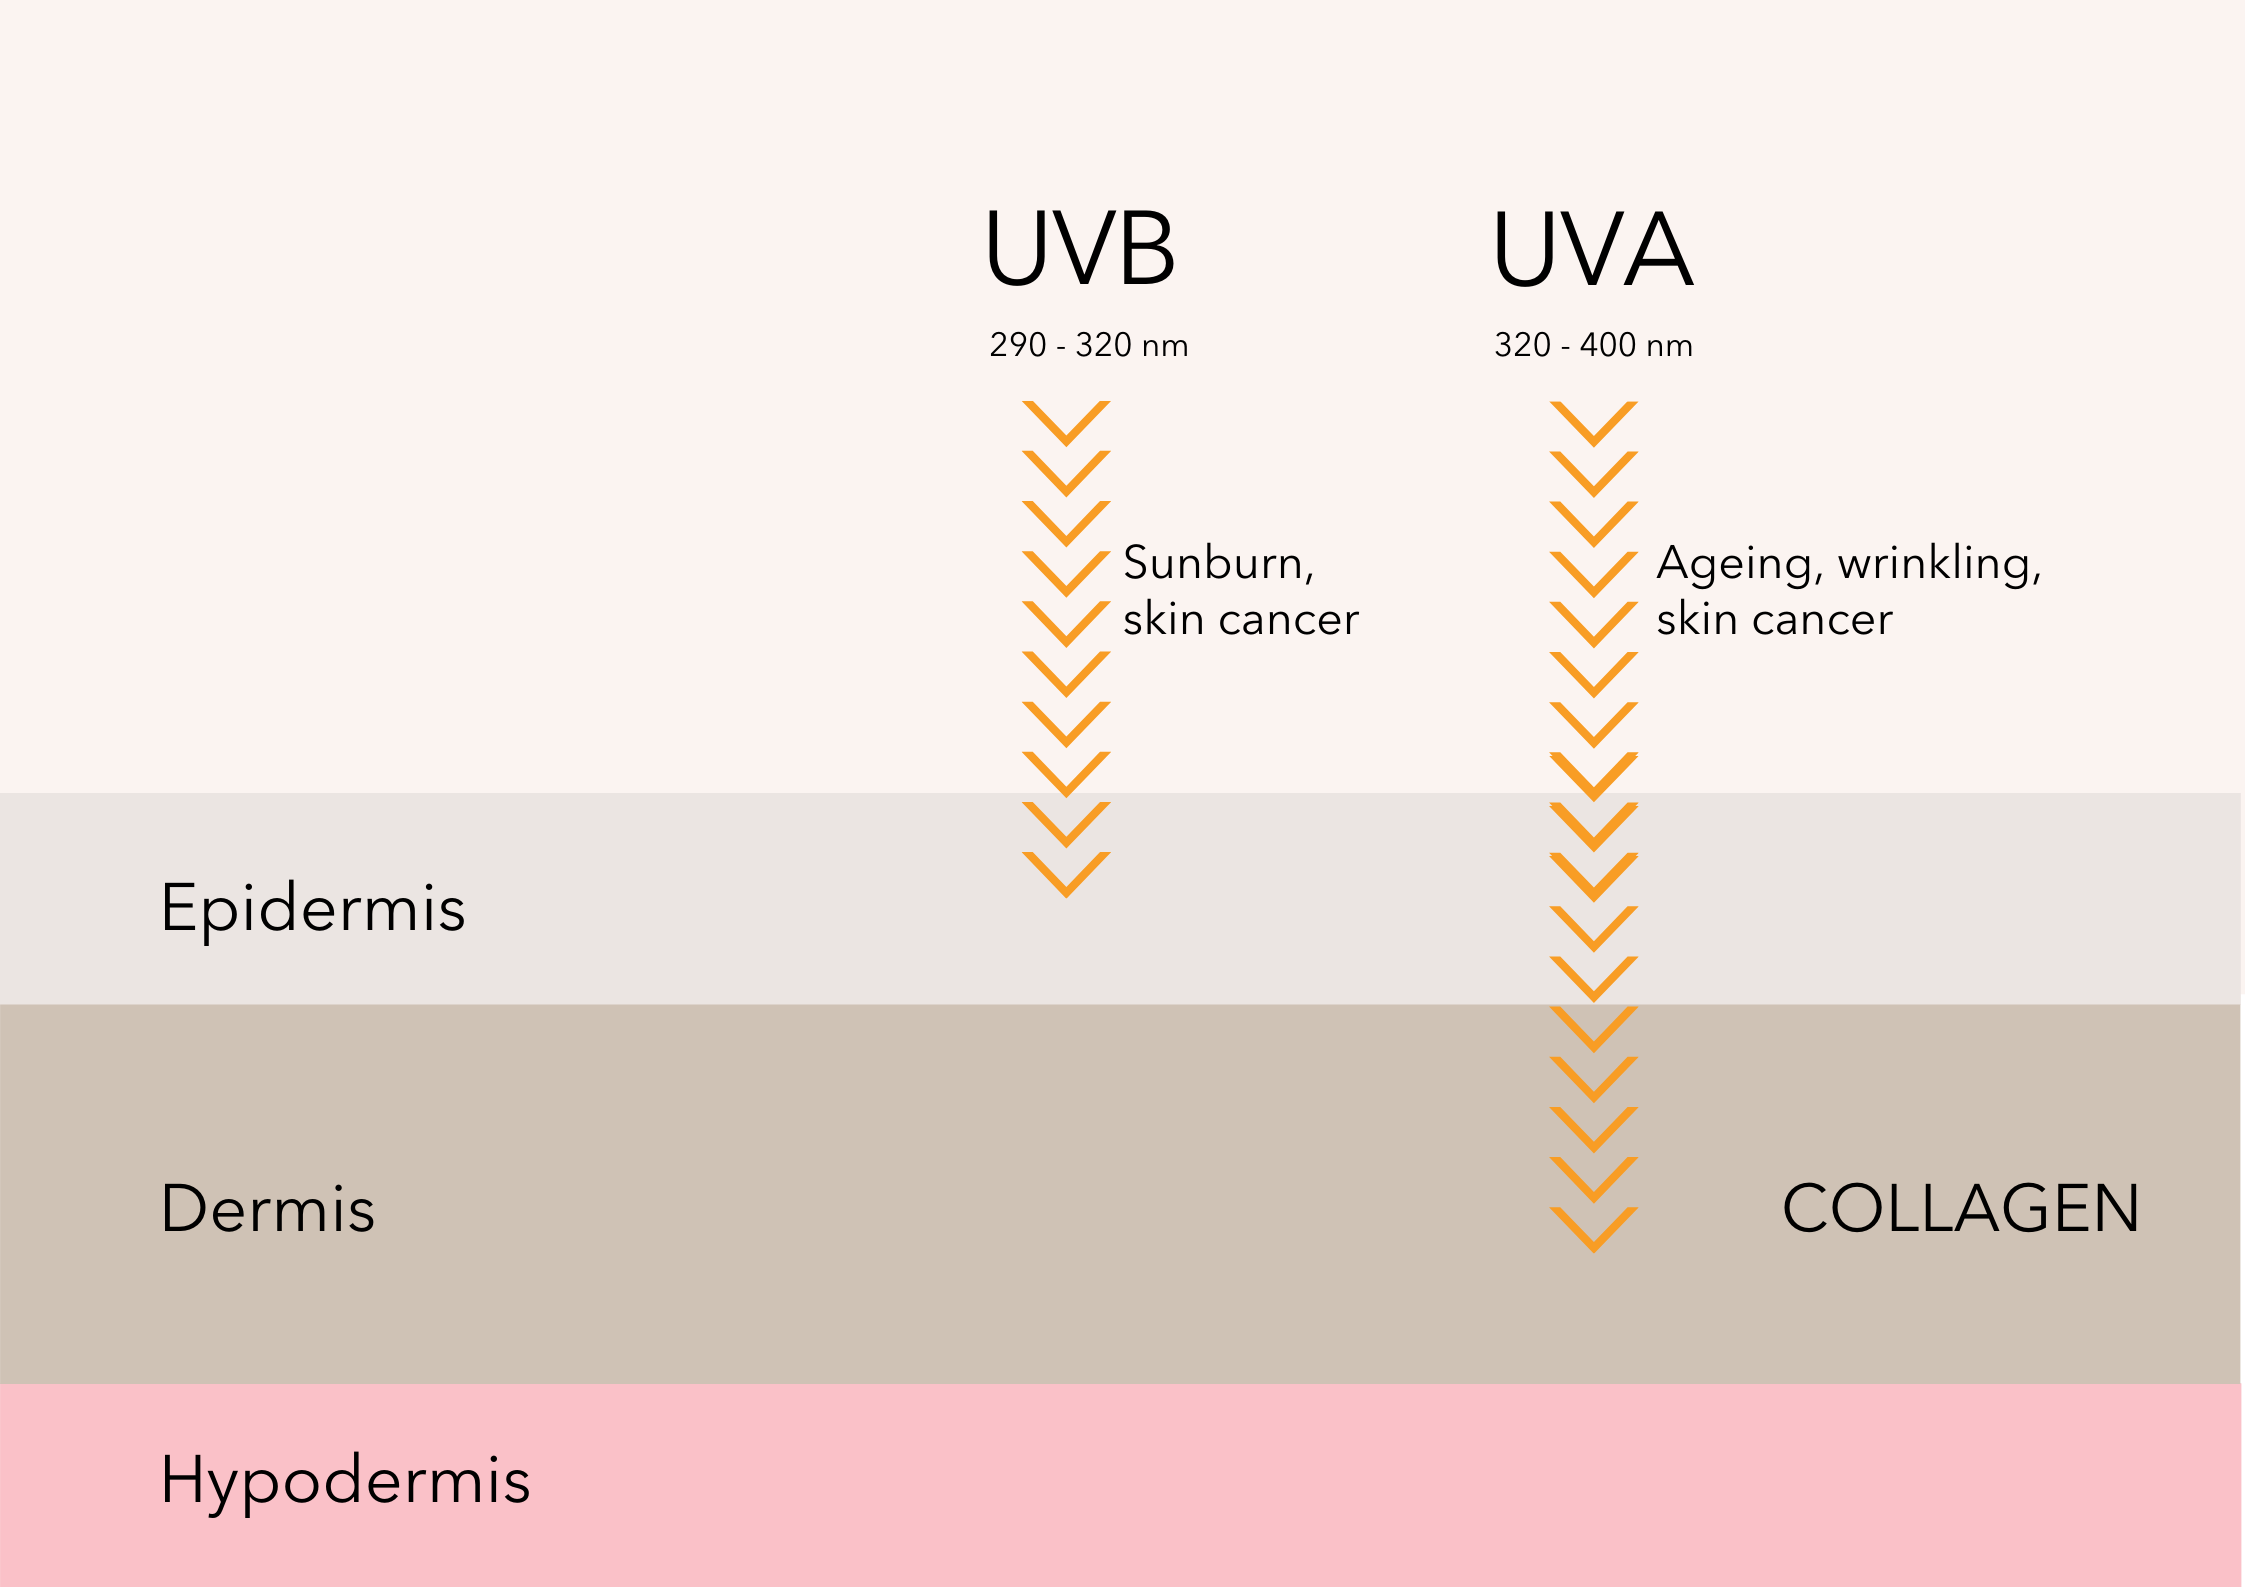 UVA and UVB rays